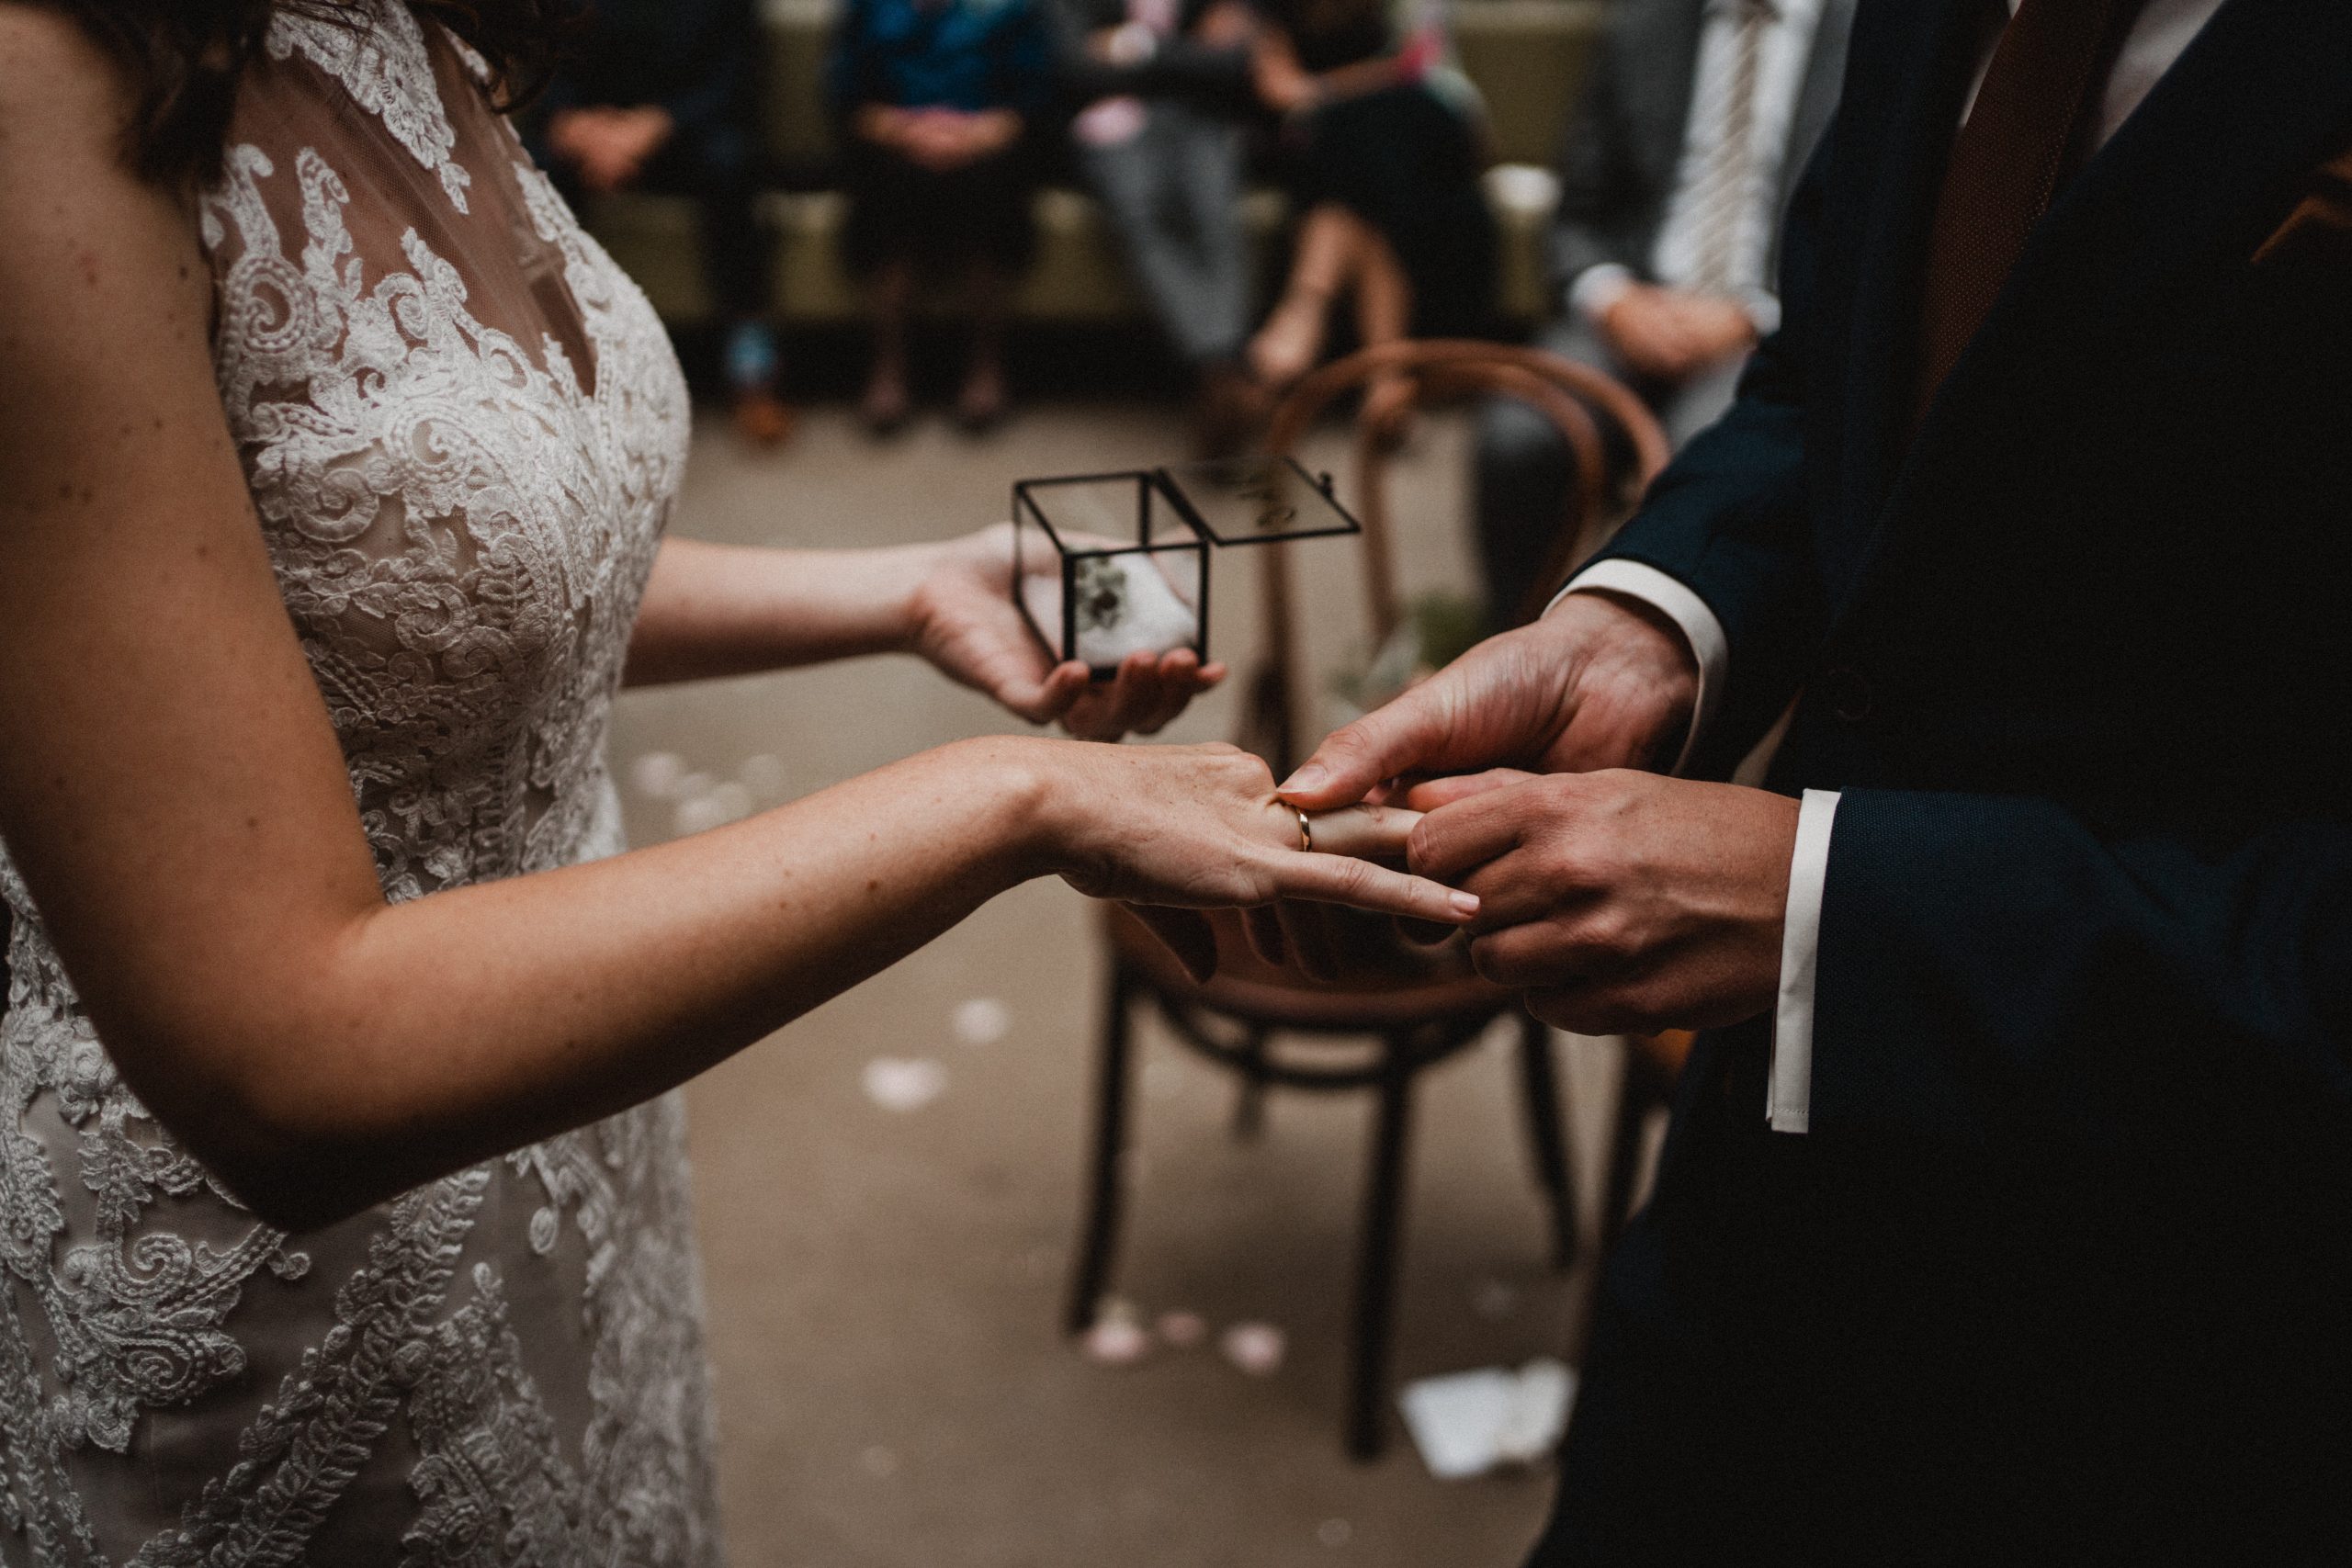 Trouwringen overhandigen: originele manieren om ringdrager te vragen voor jullie bruiloft